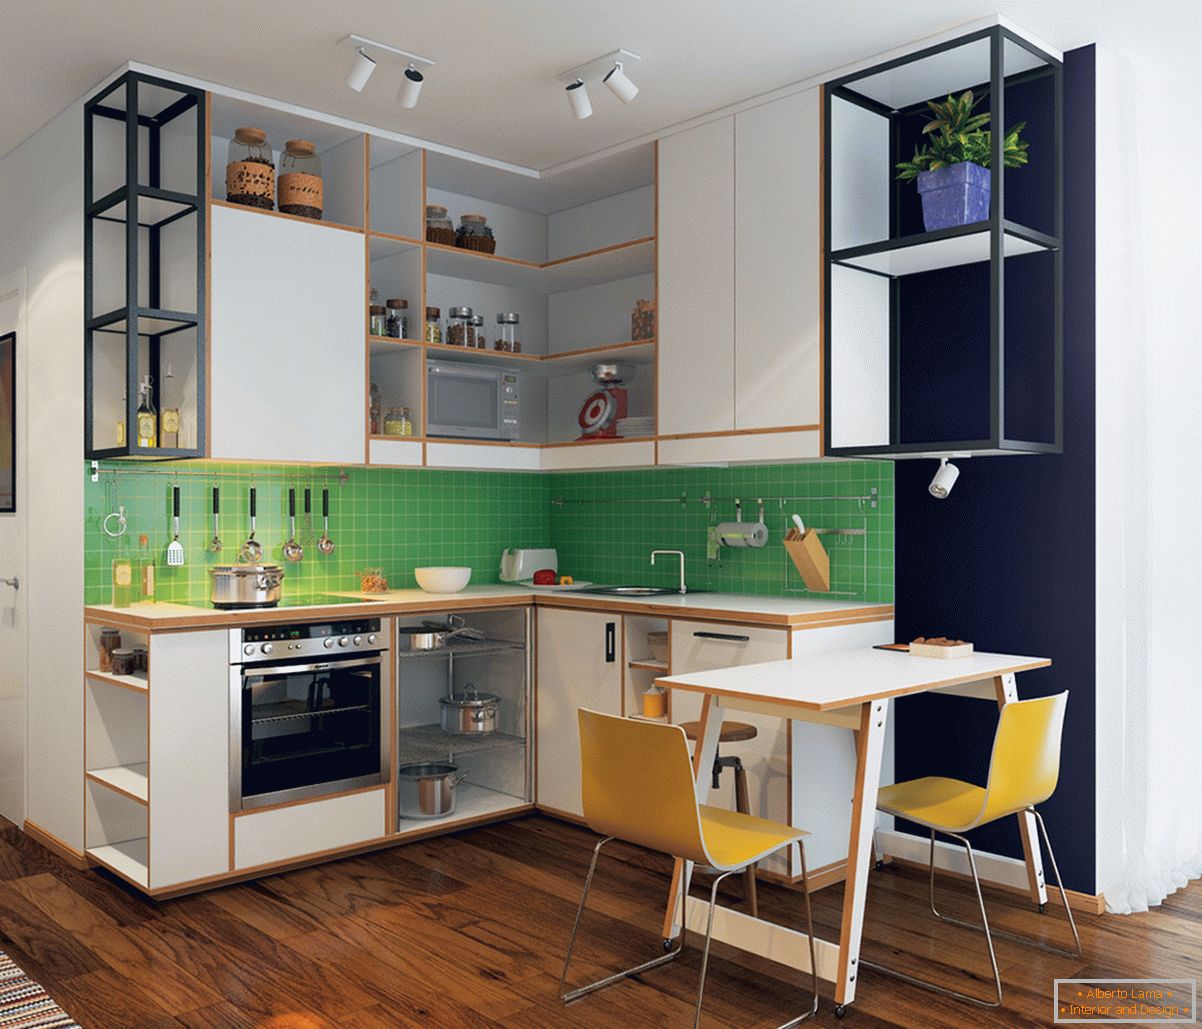 Kitchen-living room design